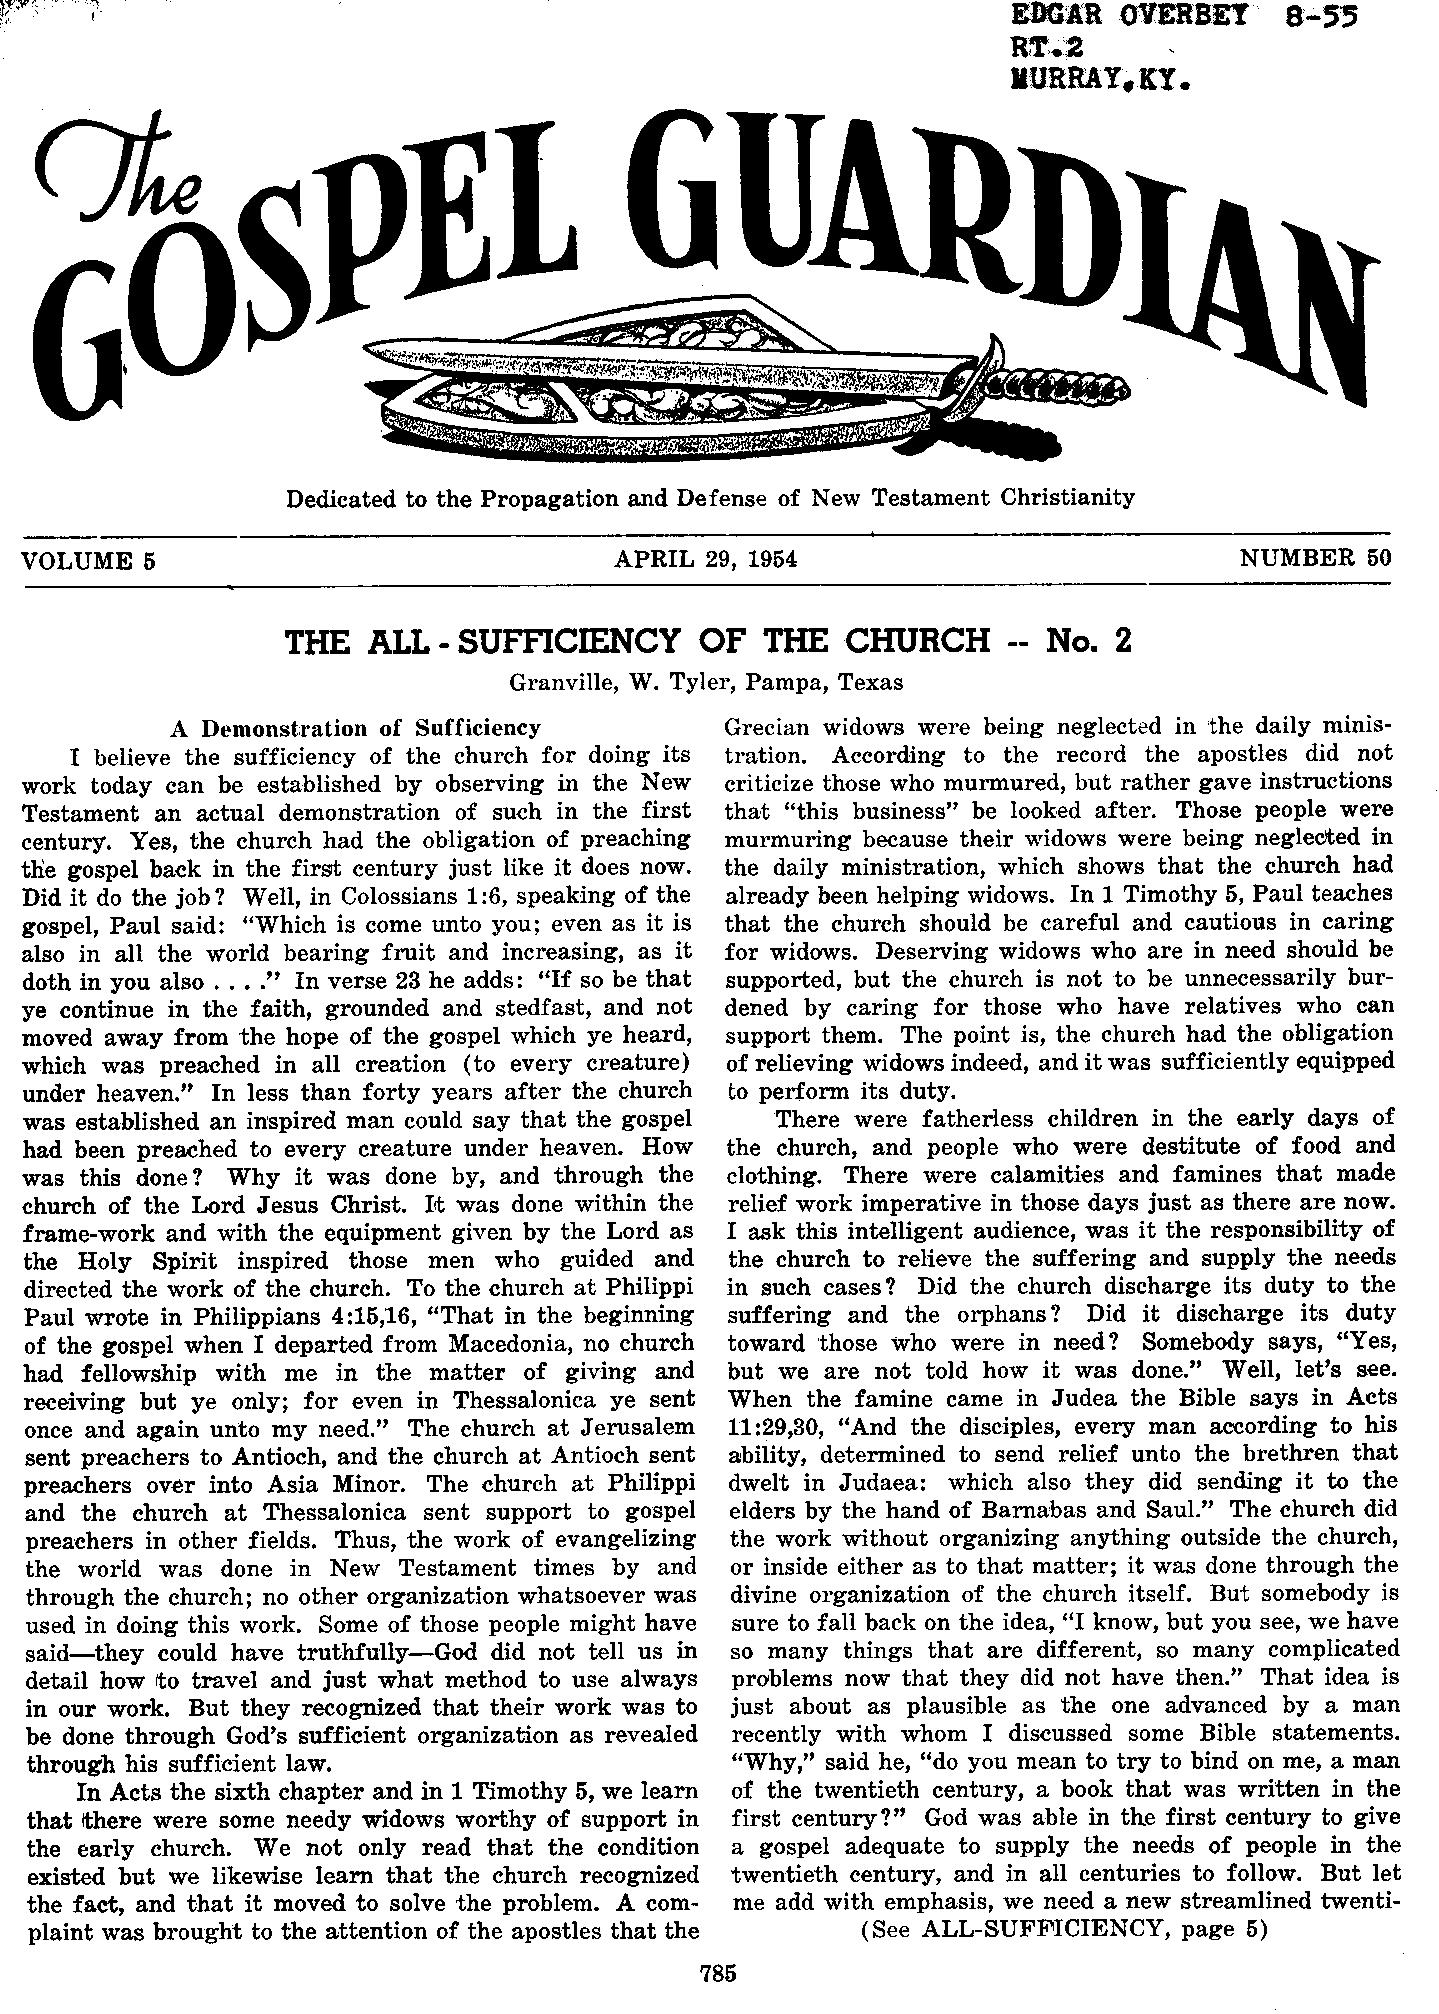 Gospel Guardian Original: Vol.5 No.50 Pg.1